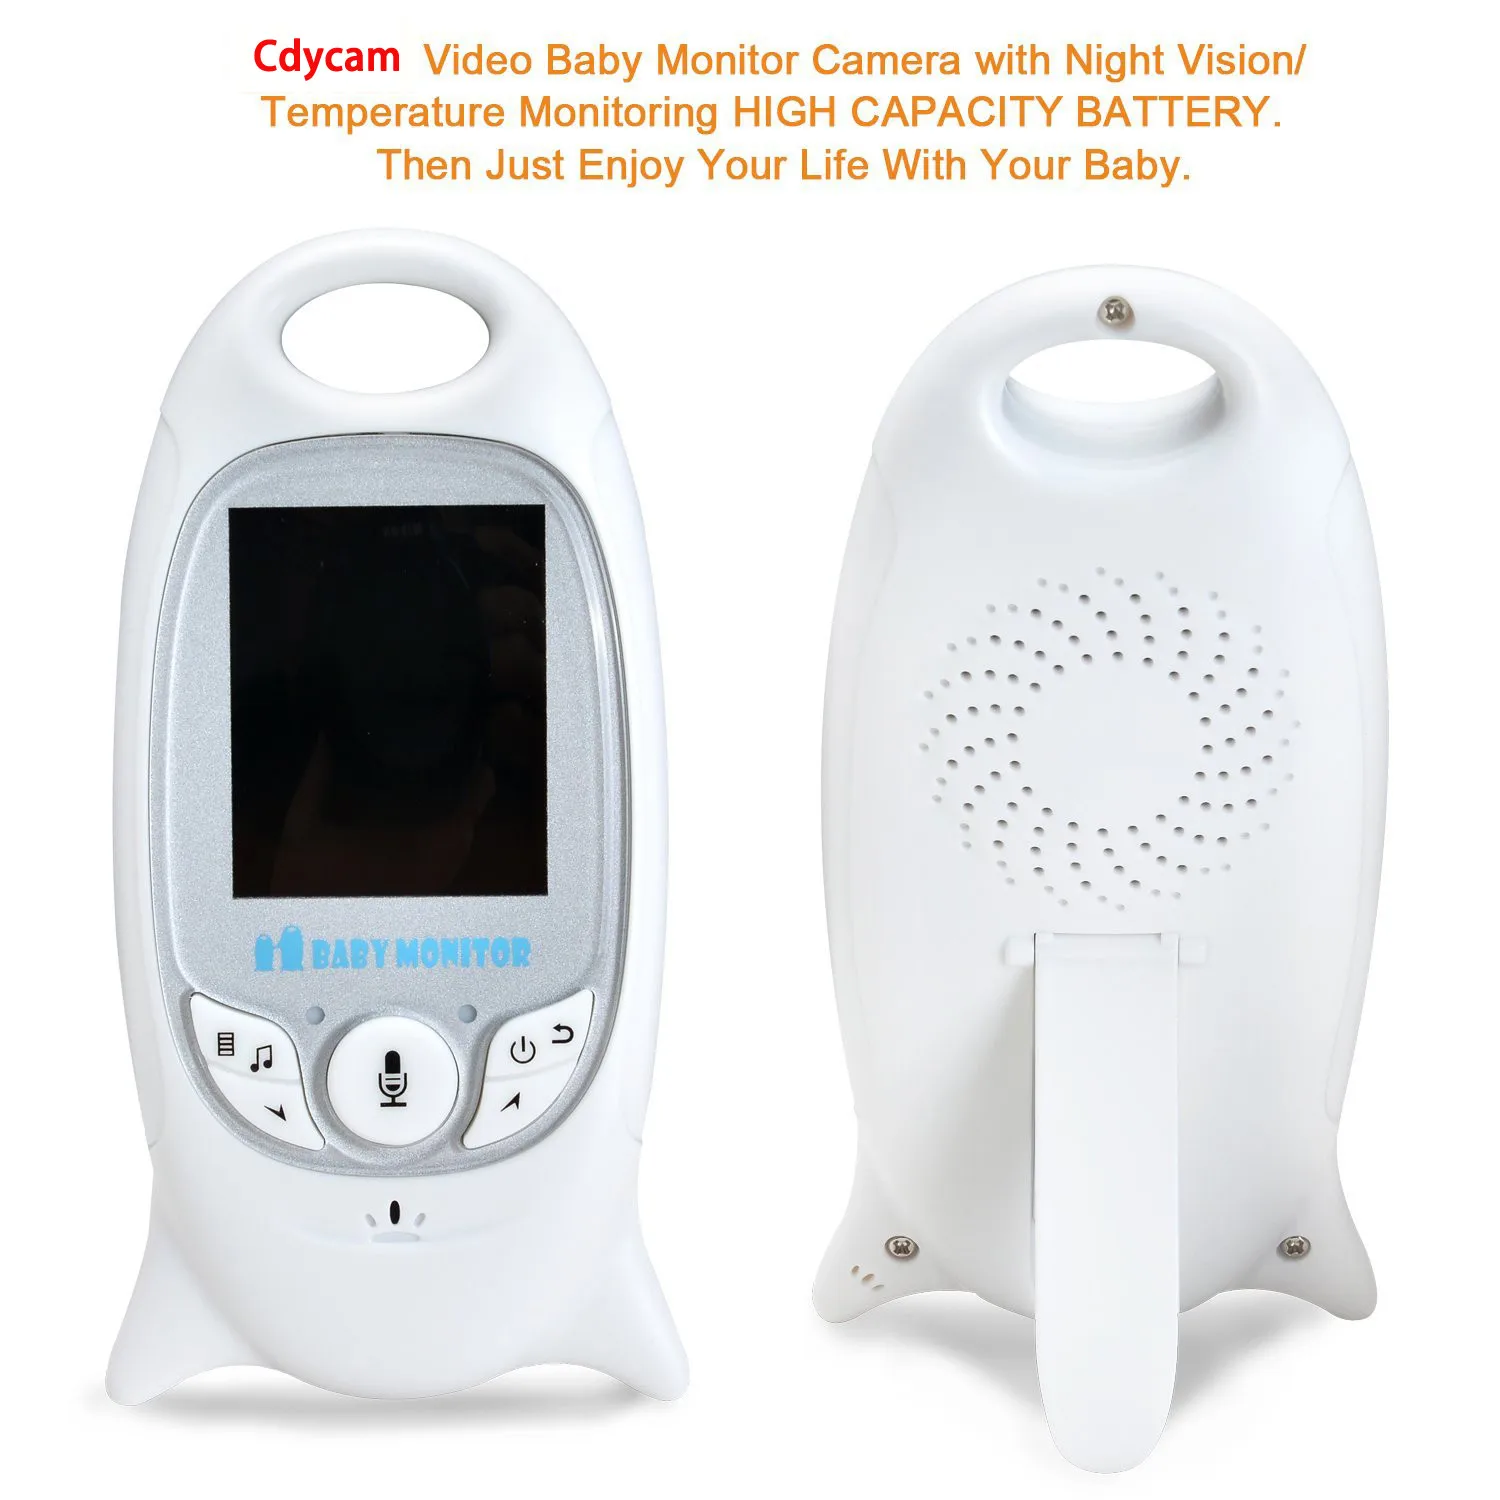 2,4 ГГц беспроводной видеоняня цветная камера видеонаблюдения Talk ИК, ночное видение Светодиодный контроль температуры детский монитор аудио видео